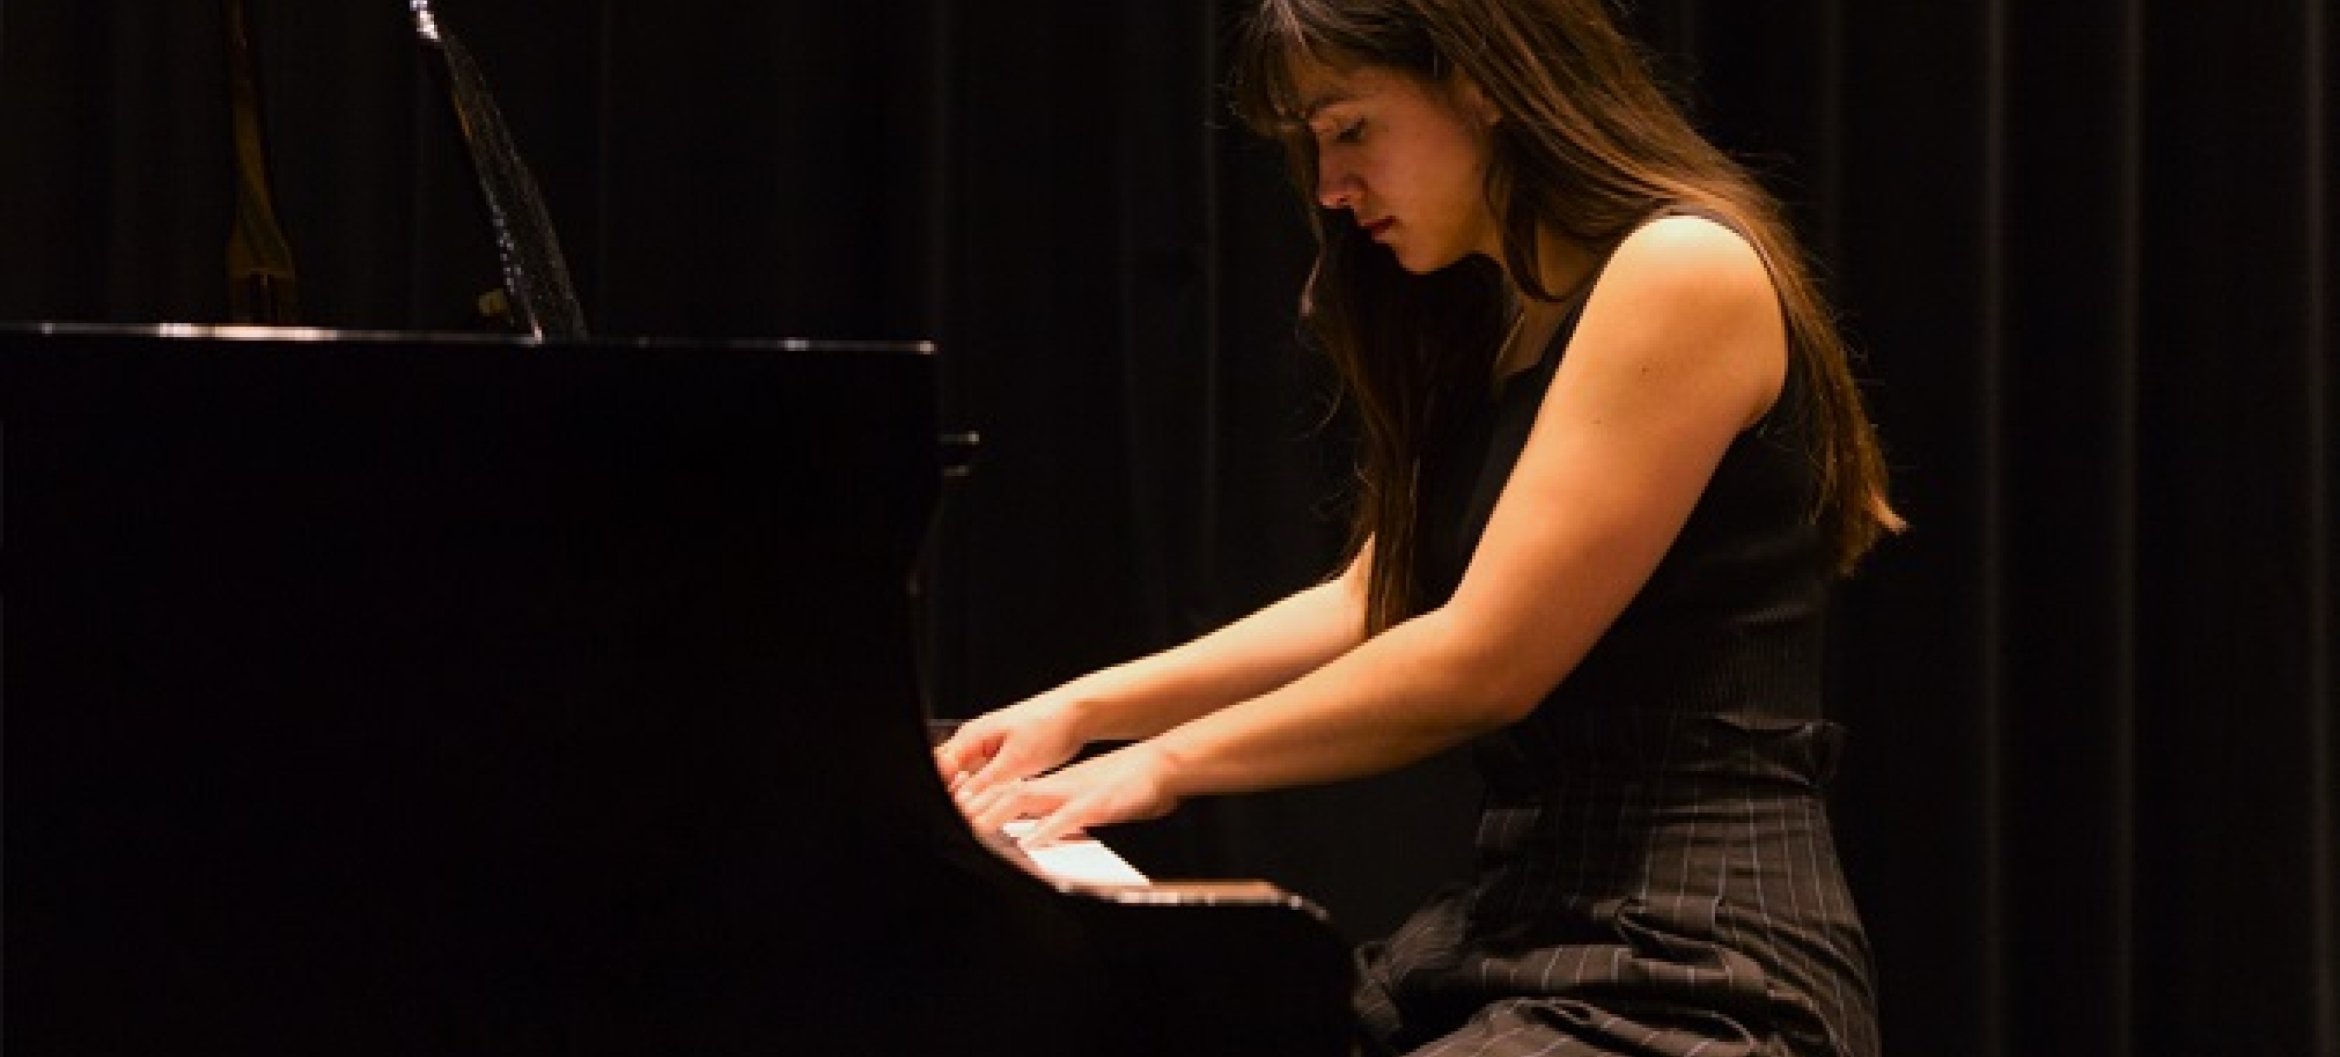 Thalisa speelt al vanaf haar zesde piano, was fan van Mozart en droomde ervan om filmmuziek te componeren